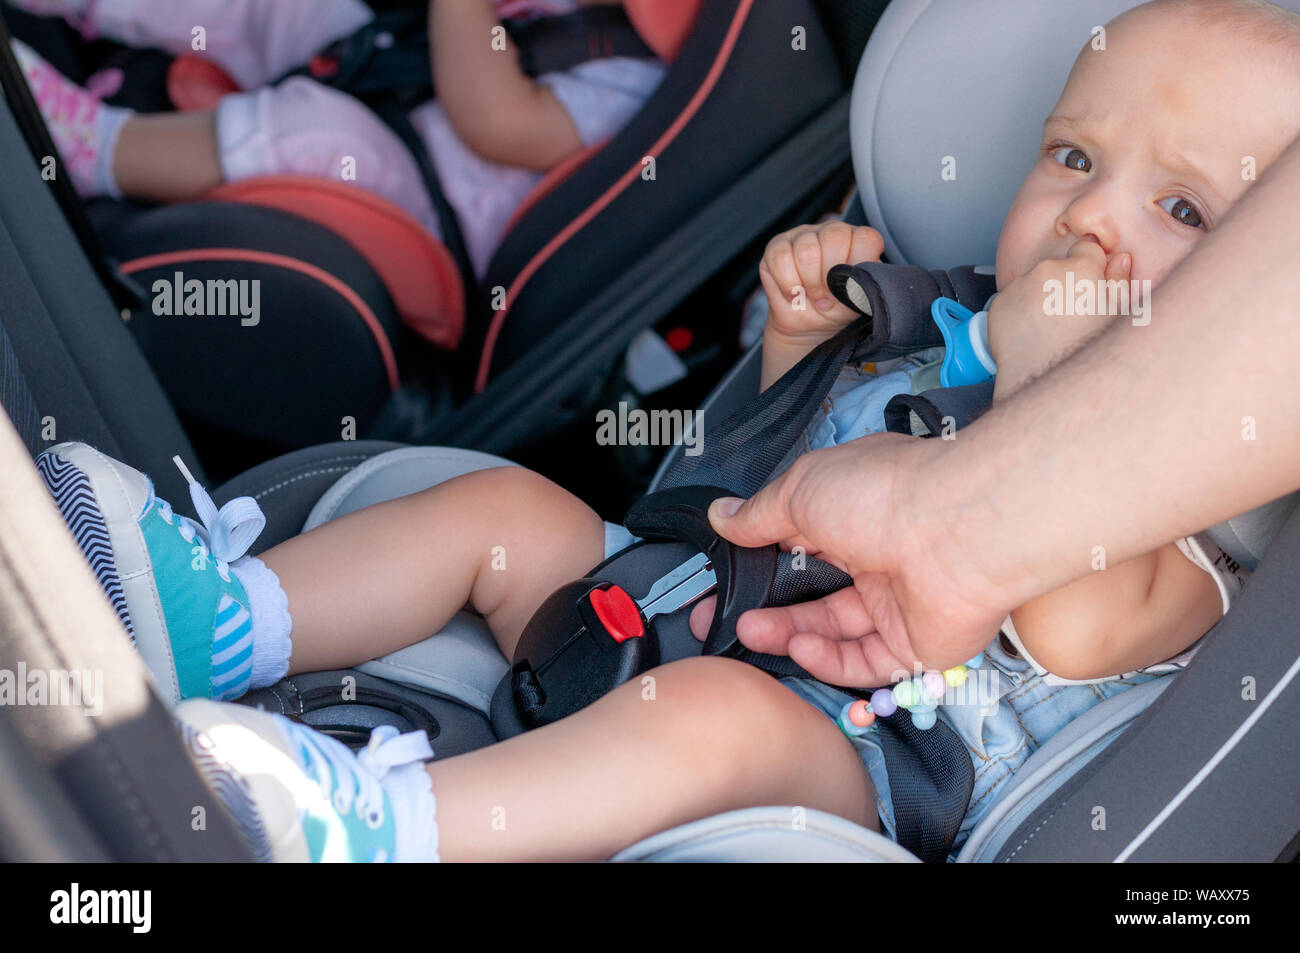 Zwei kleine Kinder schlafen im Auto Stockfotografie - Alamy